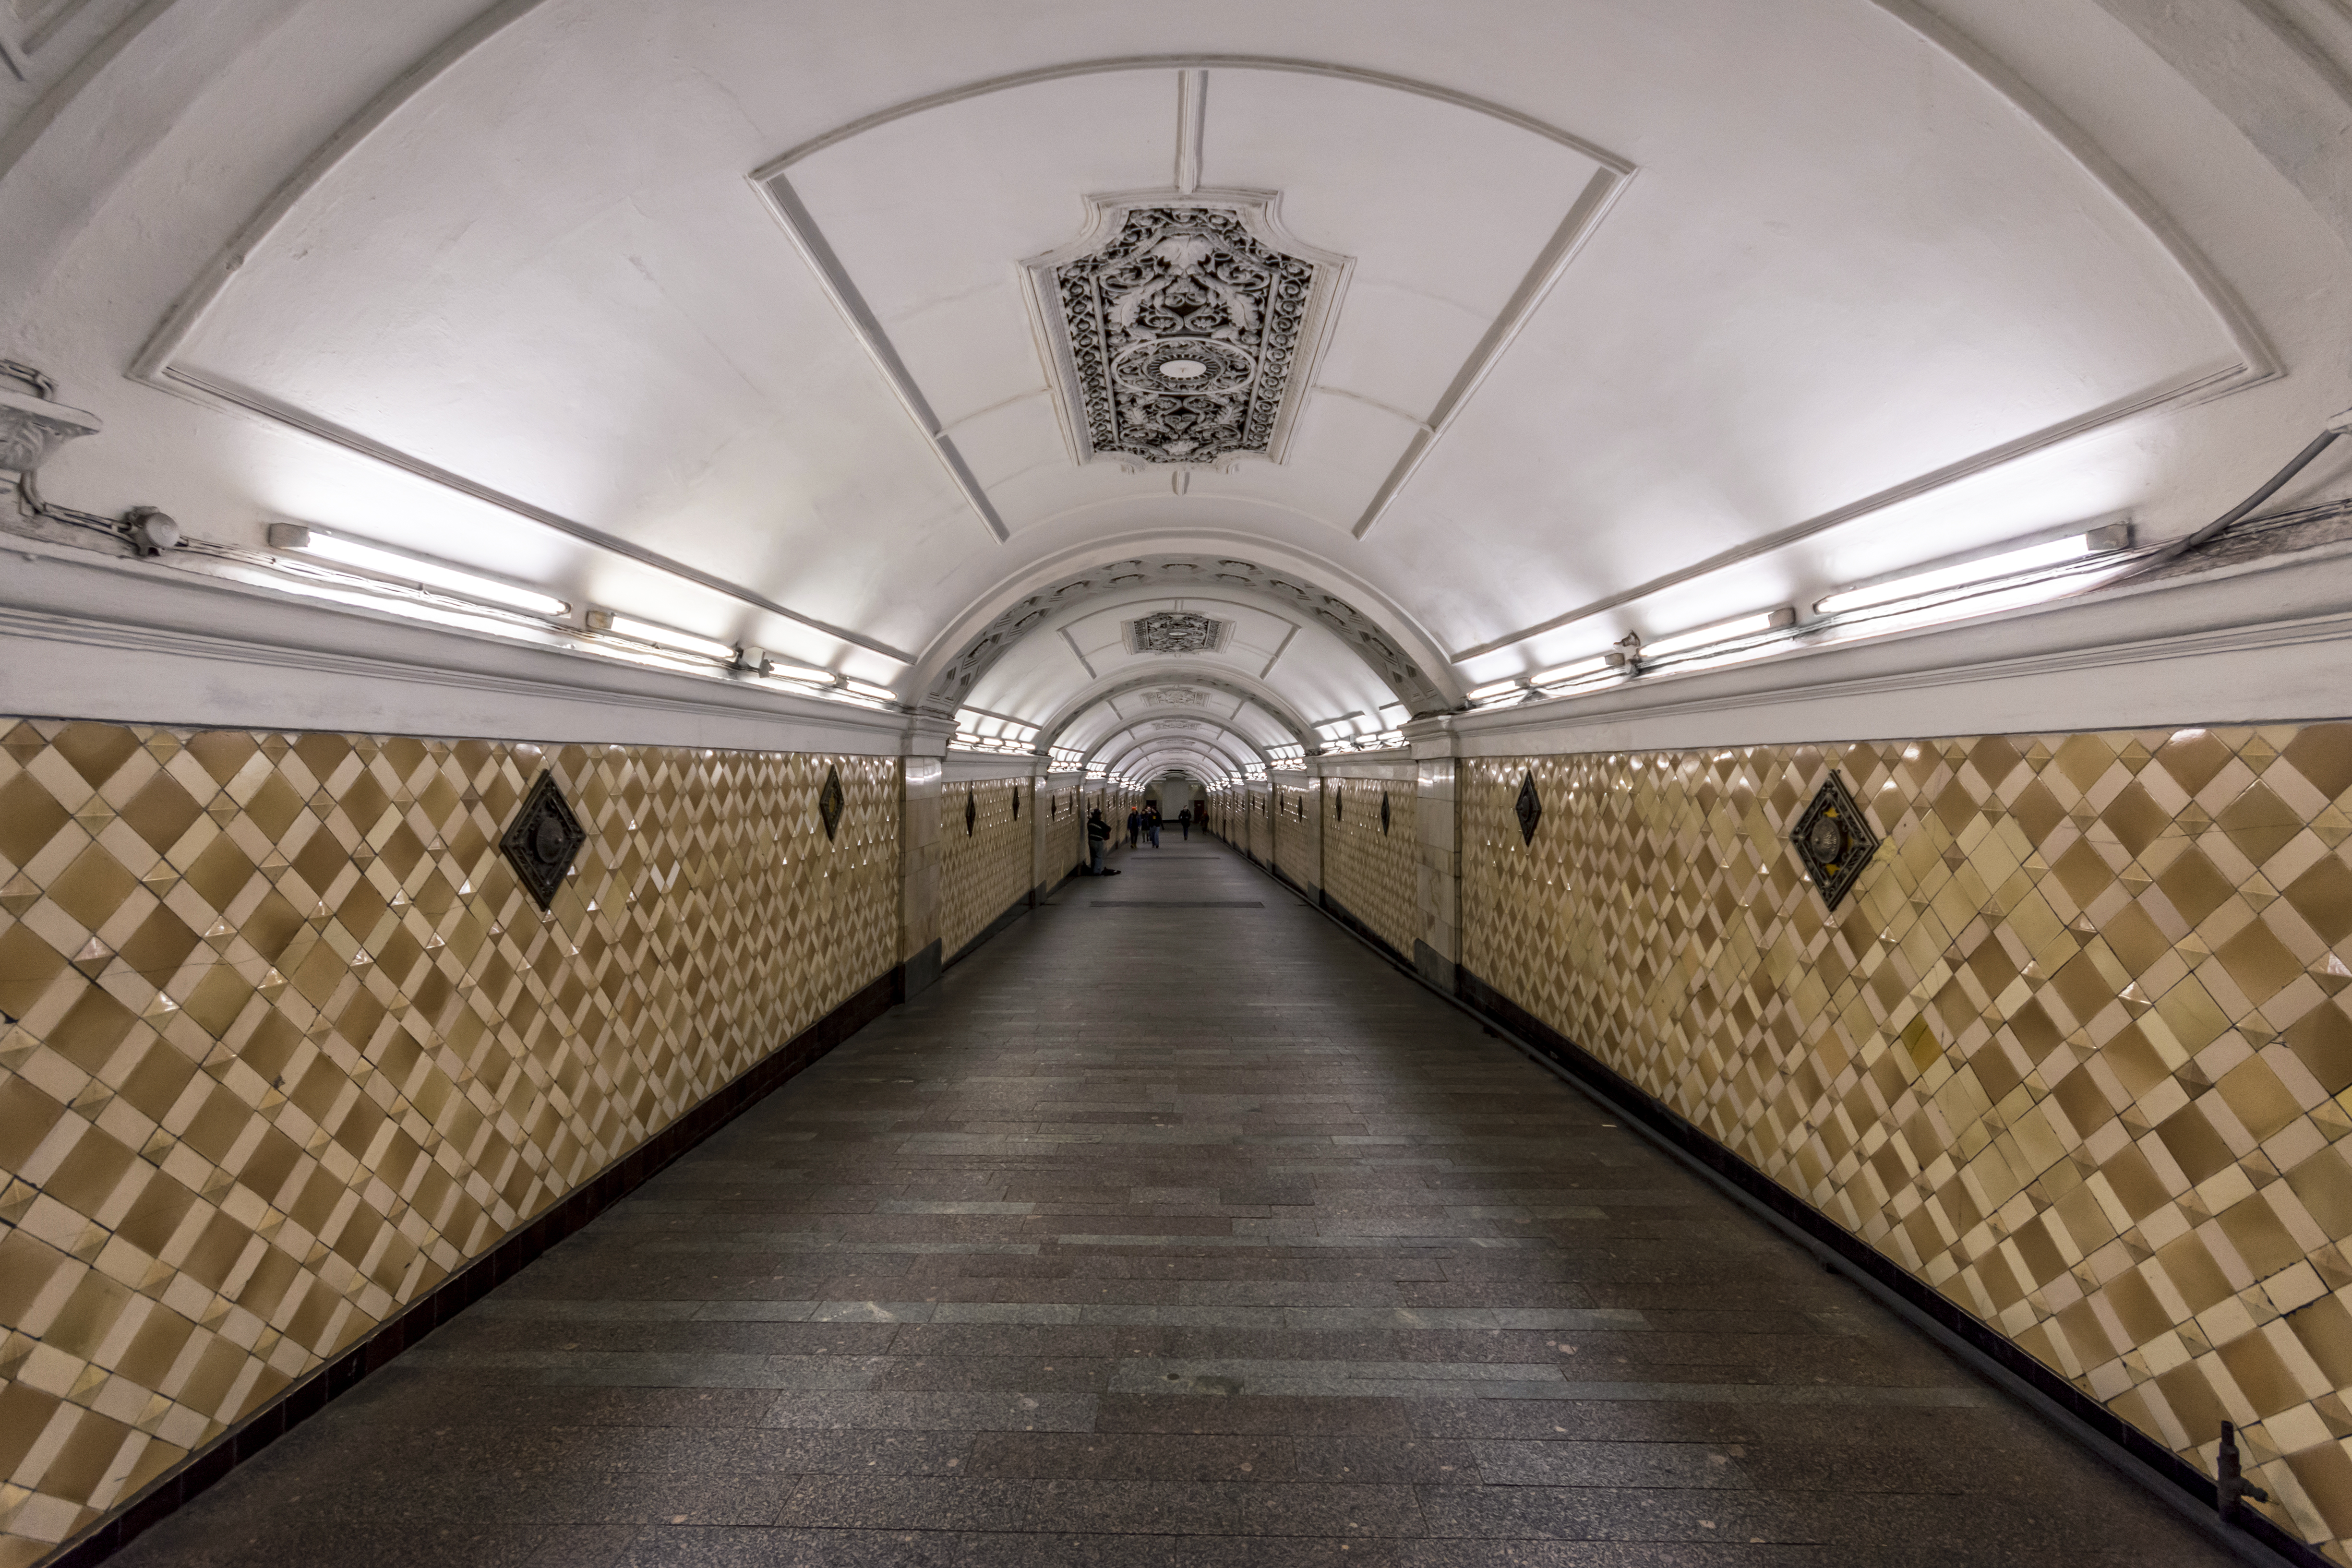 Metro MSK Transfer Ploshchad Revolyutsii to Teatralnaya